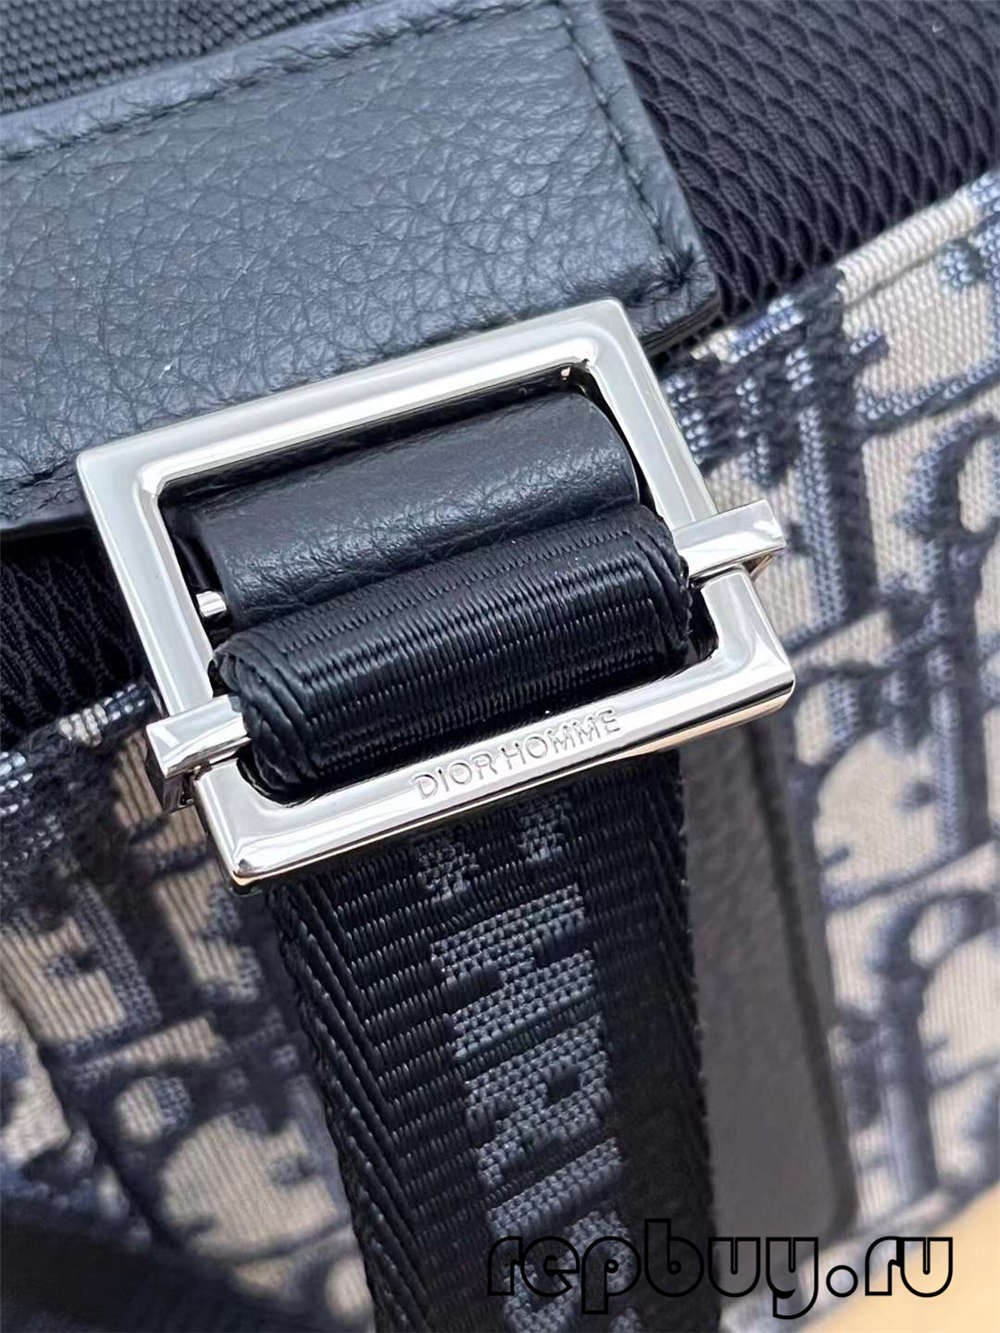 Dior Blue Embroidery Oblique Print Top replica duffel bag Hardware and Logo details (2022 Special)-Best Quality Fake designer Bag Review, Replica designer bag ru